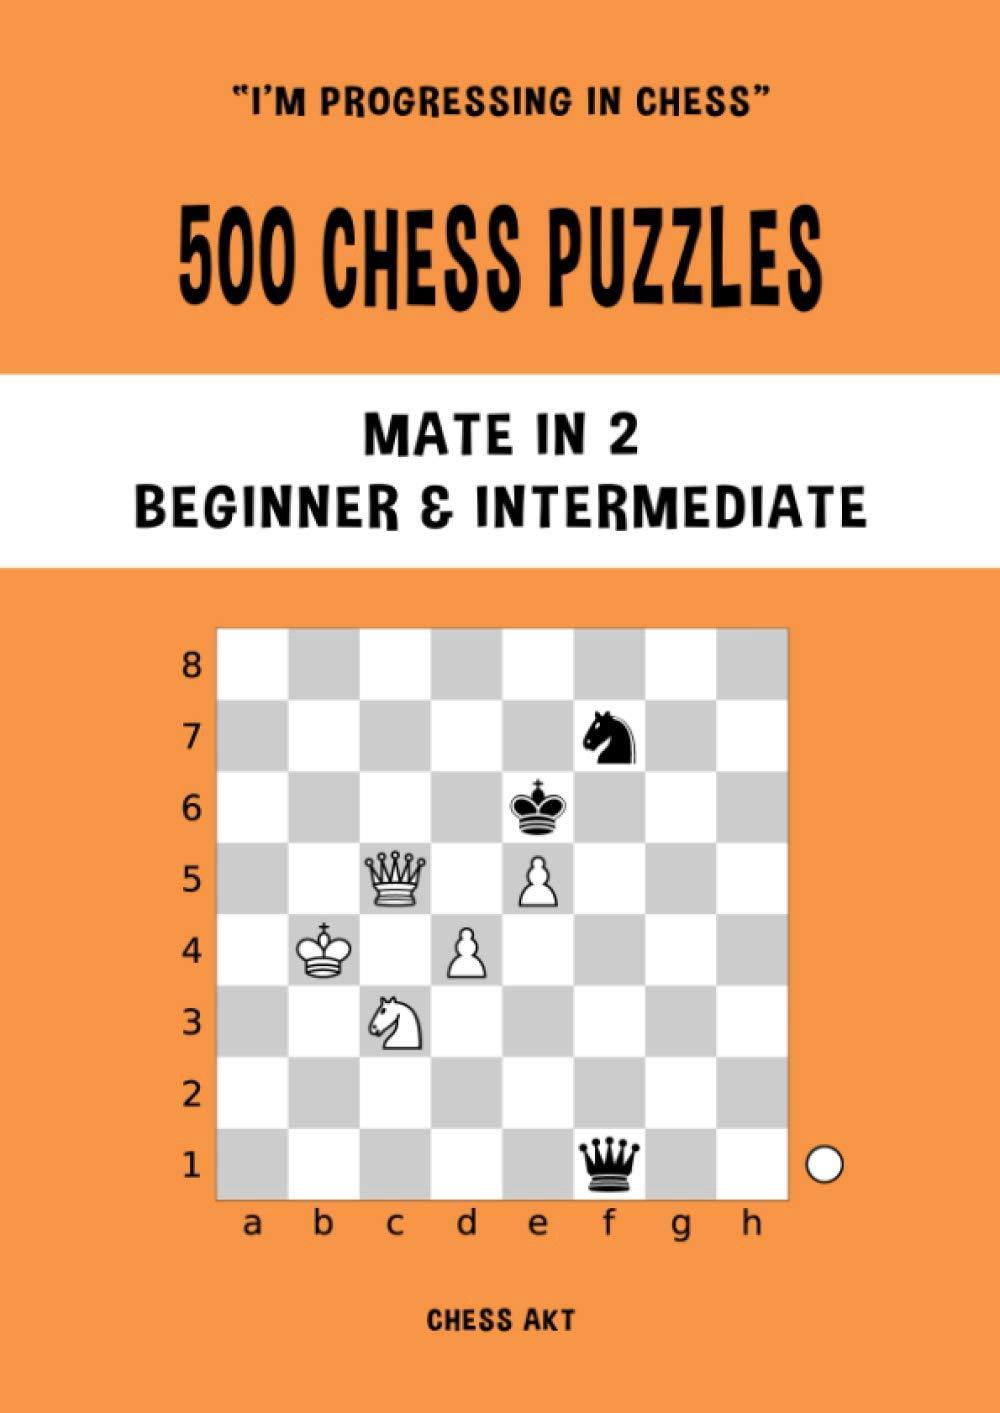 PDF] D.O.W.N.L.O.A.D 500 Chess Puzzles, Mate in 1, Beginner Level PDF Full  / X